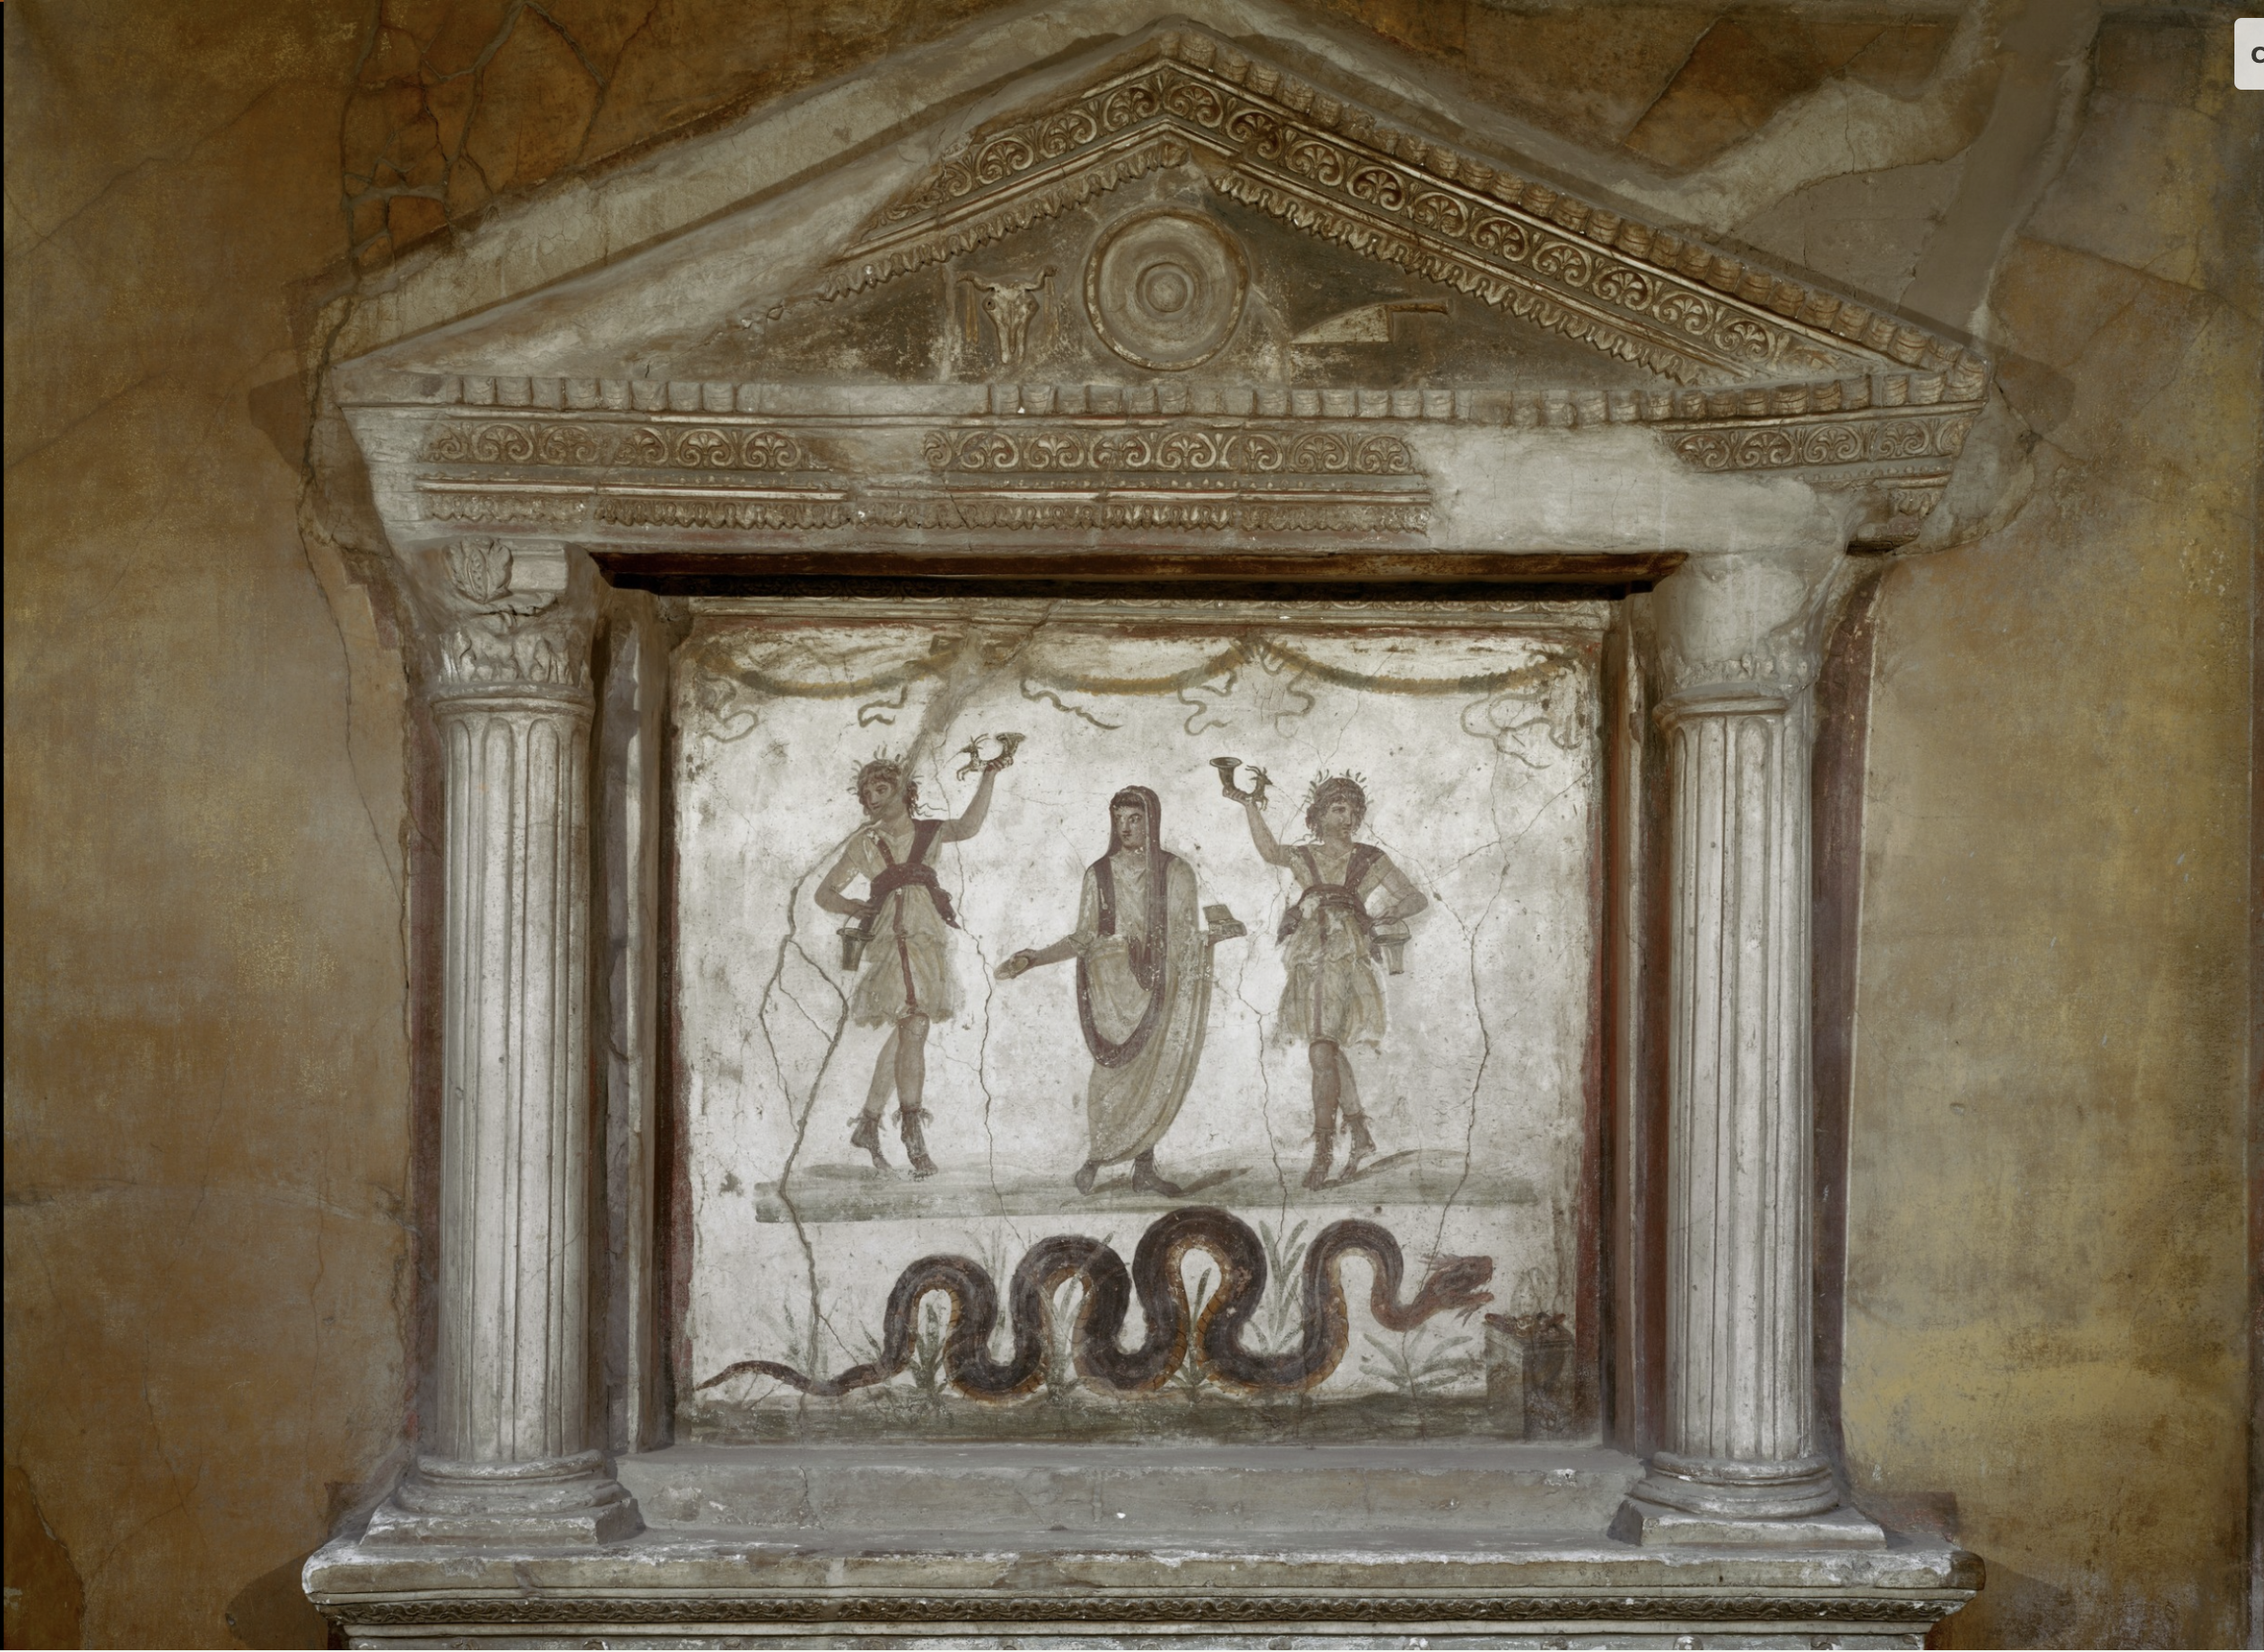 House of Vettii, Lararium (63 - 79 CE)